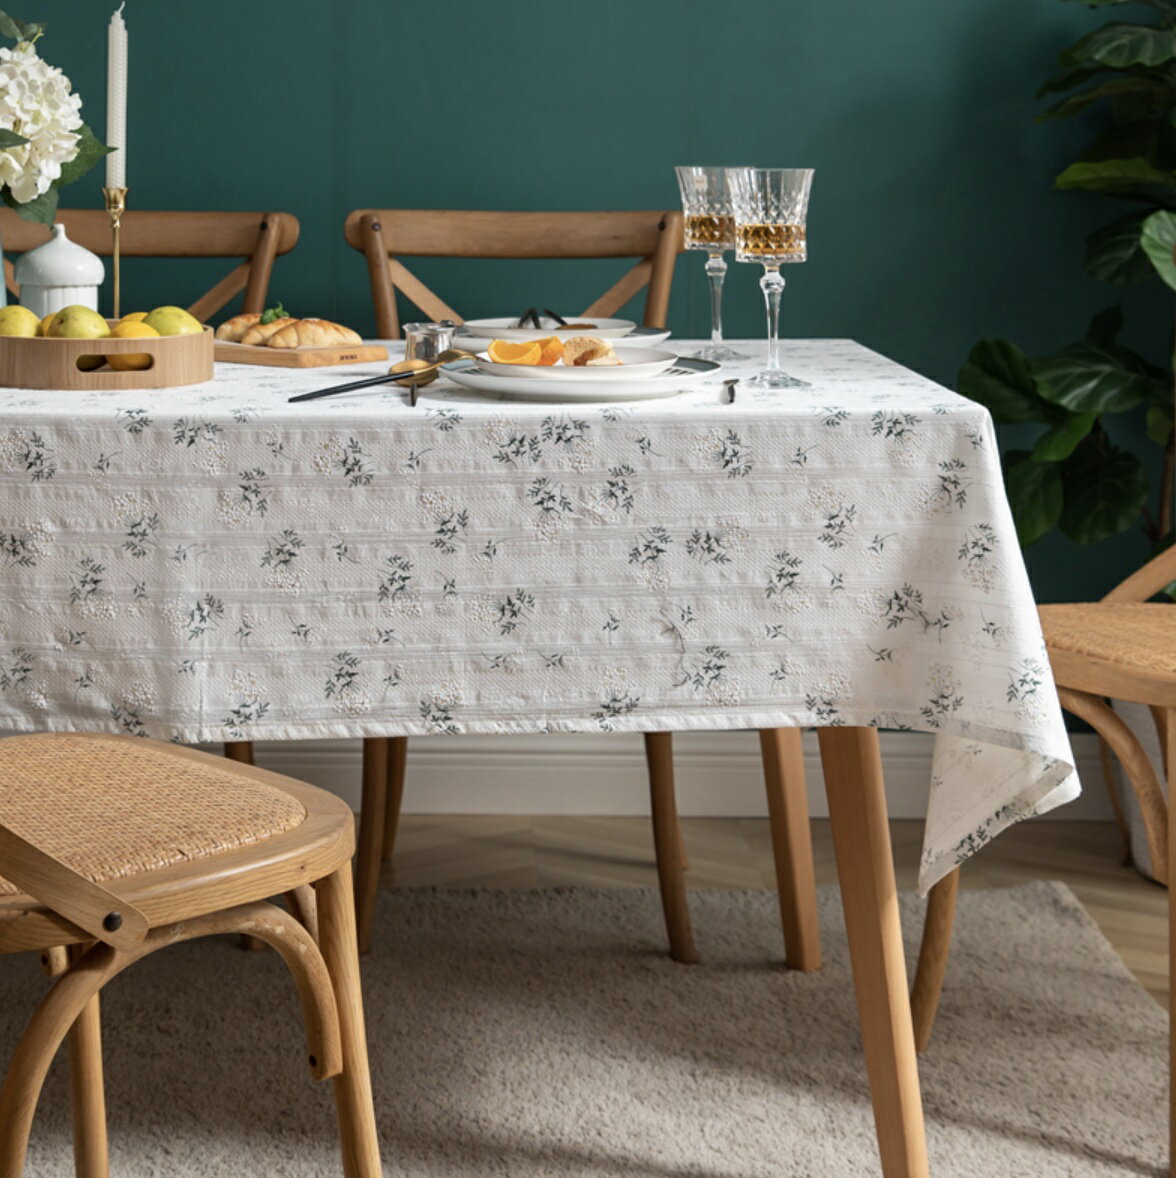 花柄テーブルクロス テーブルクロス 自然な風合い ホワイト おしゃれ 可愛い 花柄 100x160 北欧 韓国 リネン風 シンプル 長方形 丸洗い可 テーブルカバー 食卓カバー かわいい